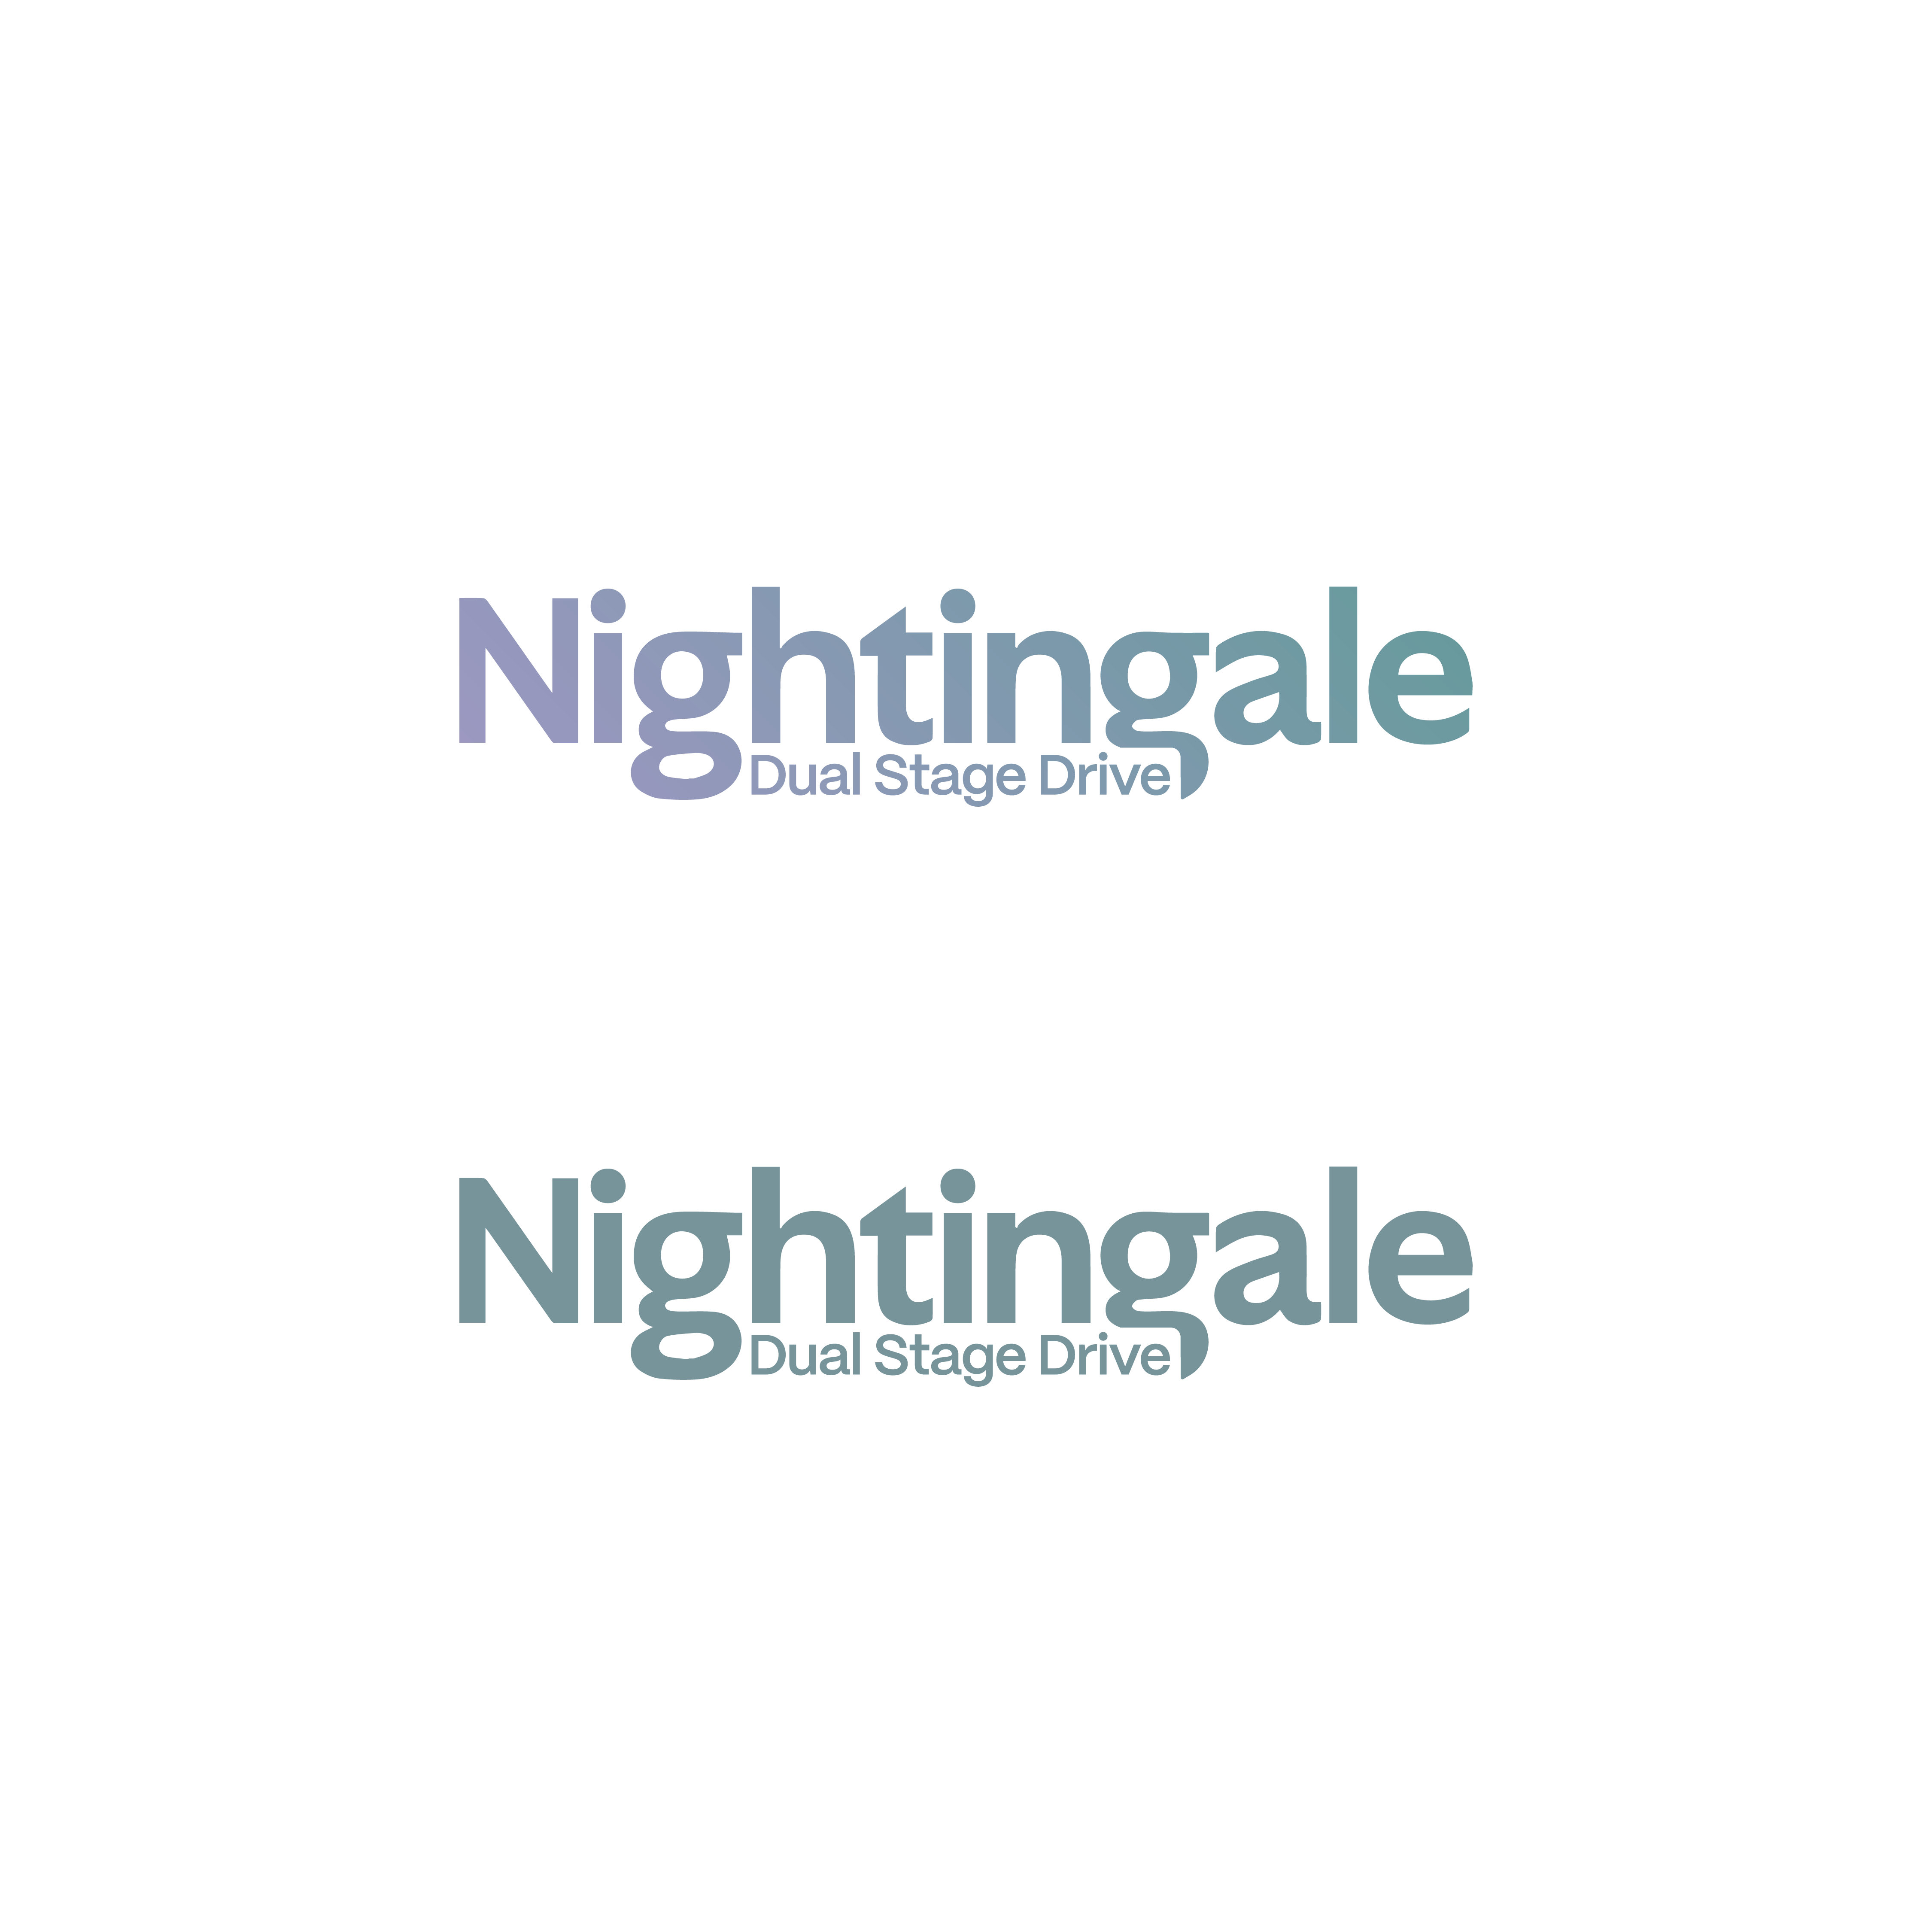 Nightingale_Branding-04